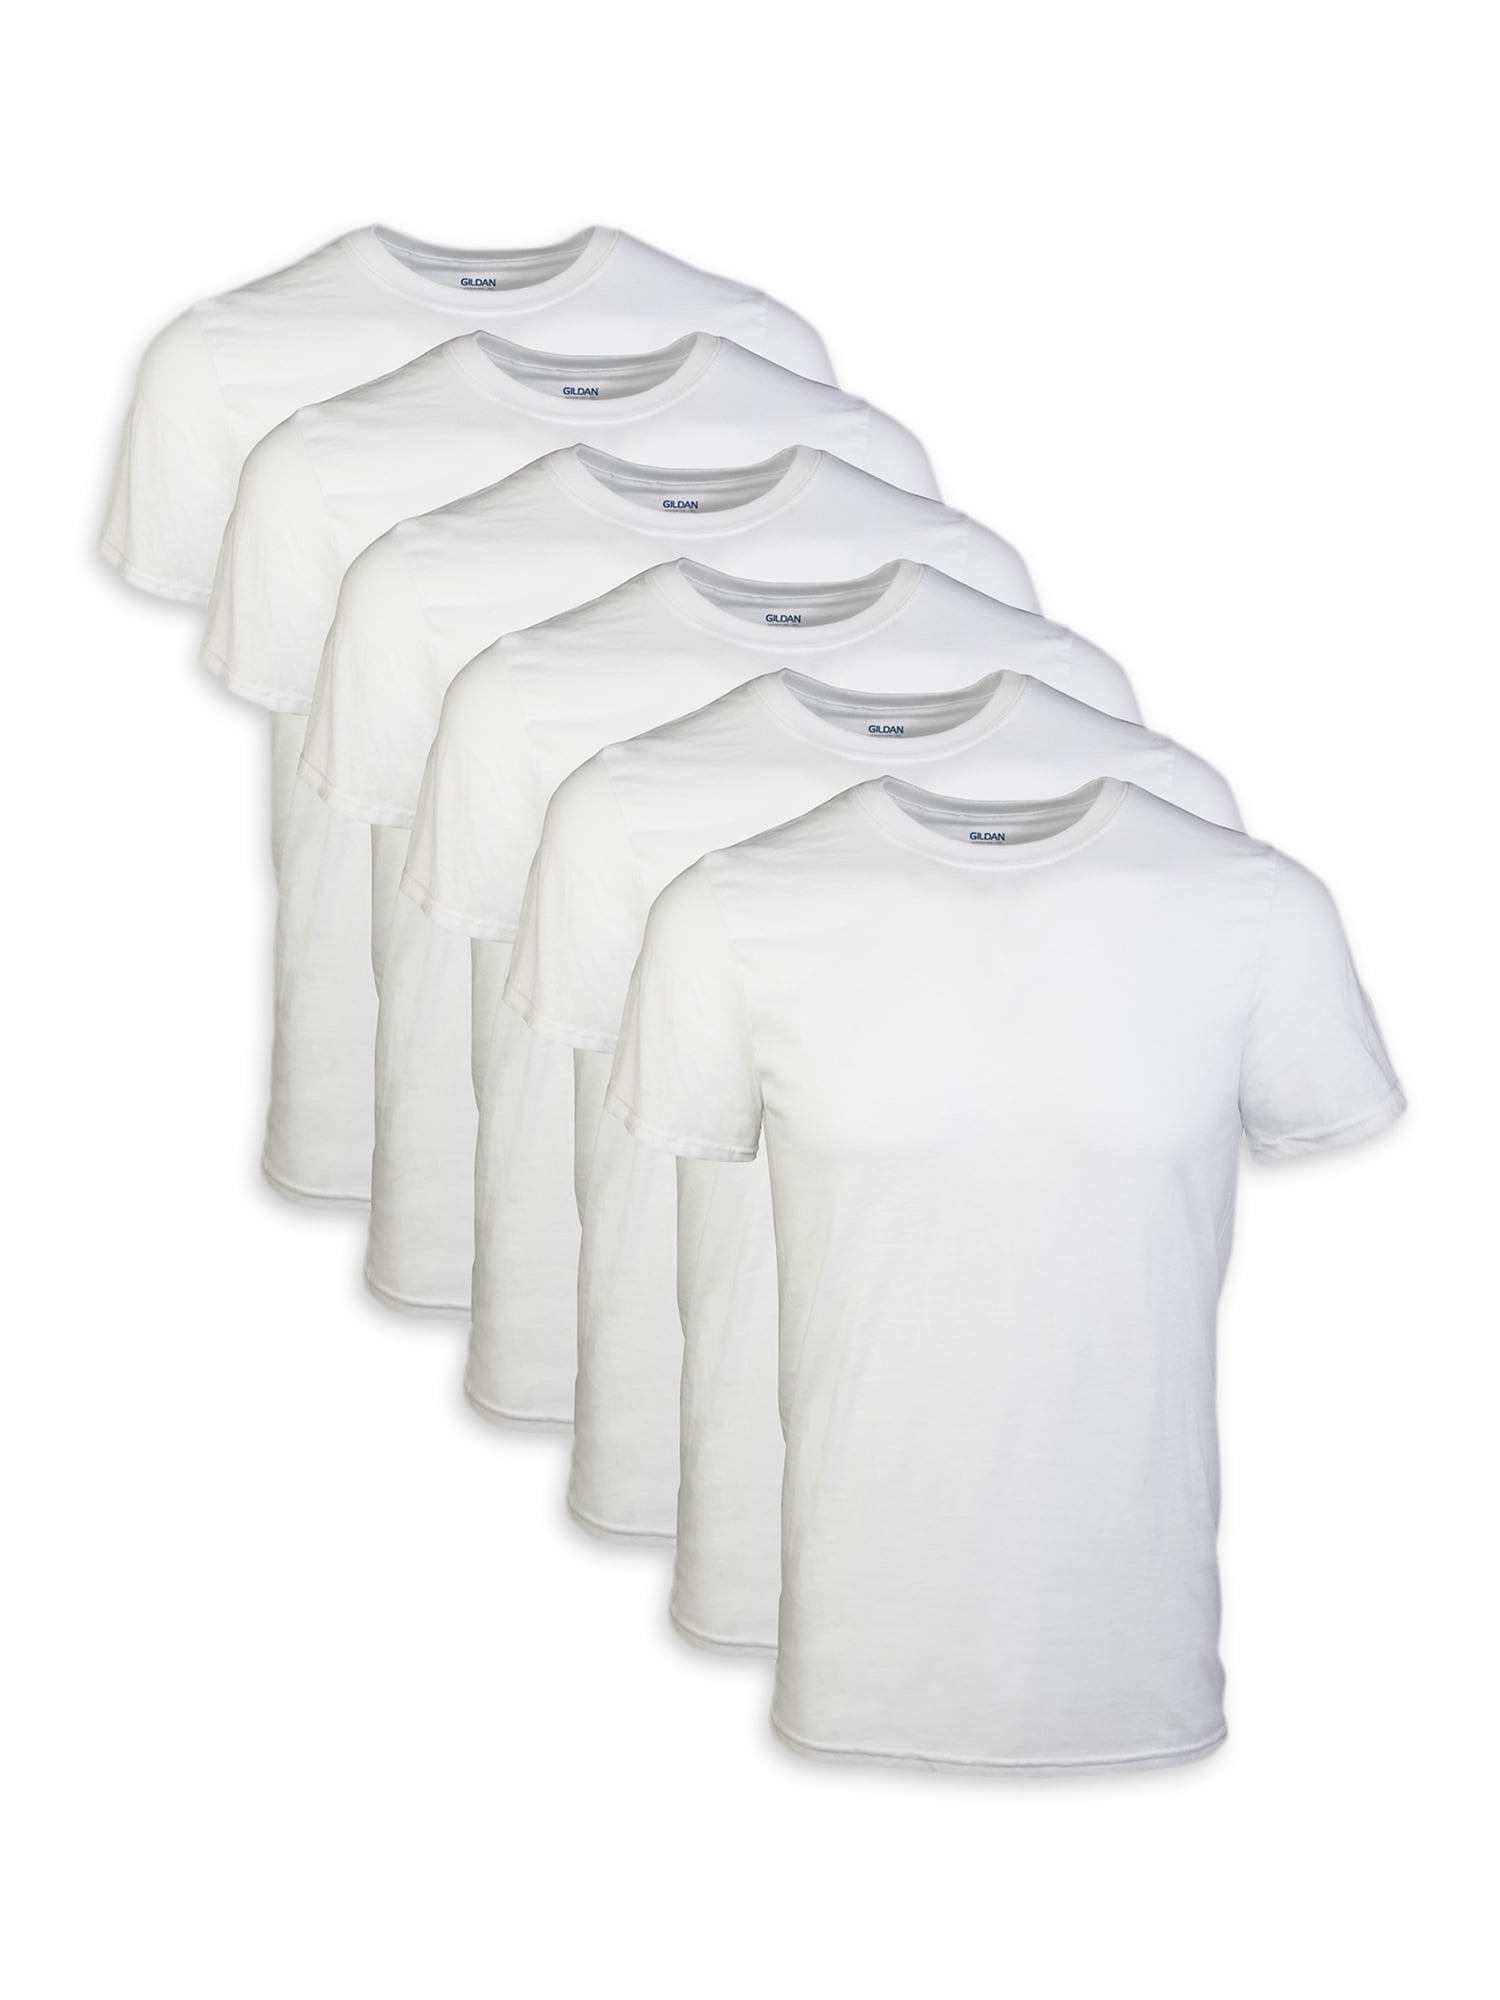 New Mens 3-6 Pieces 100% Cotton Plain White T-Shirts Adult Size S M L XL 